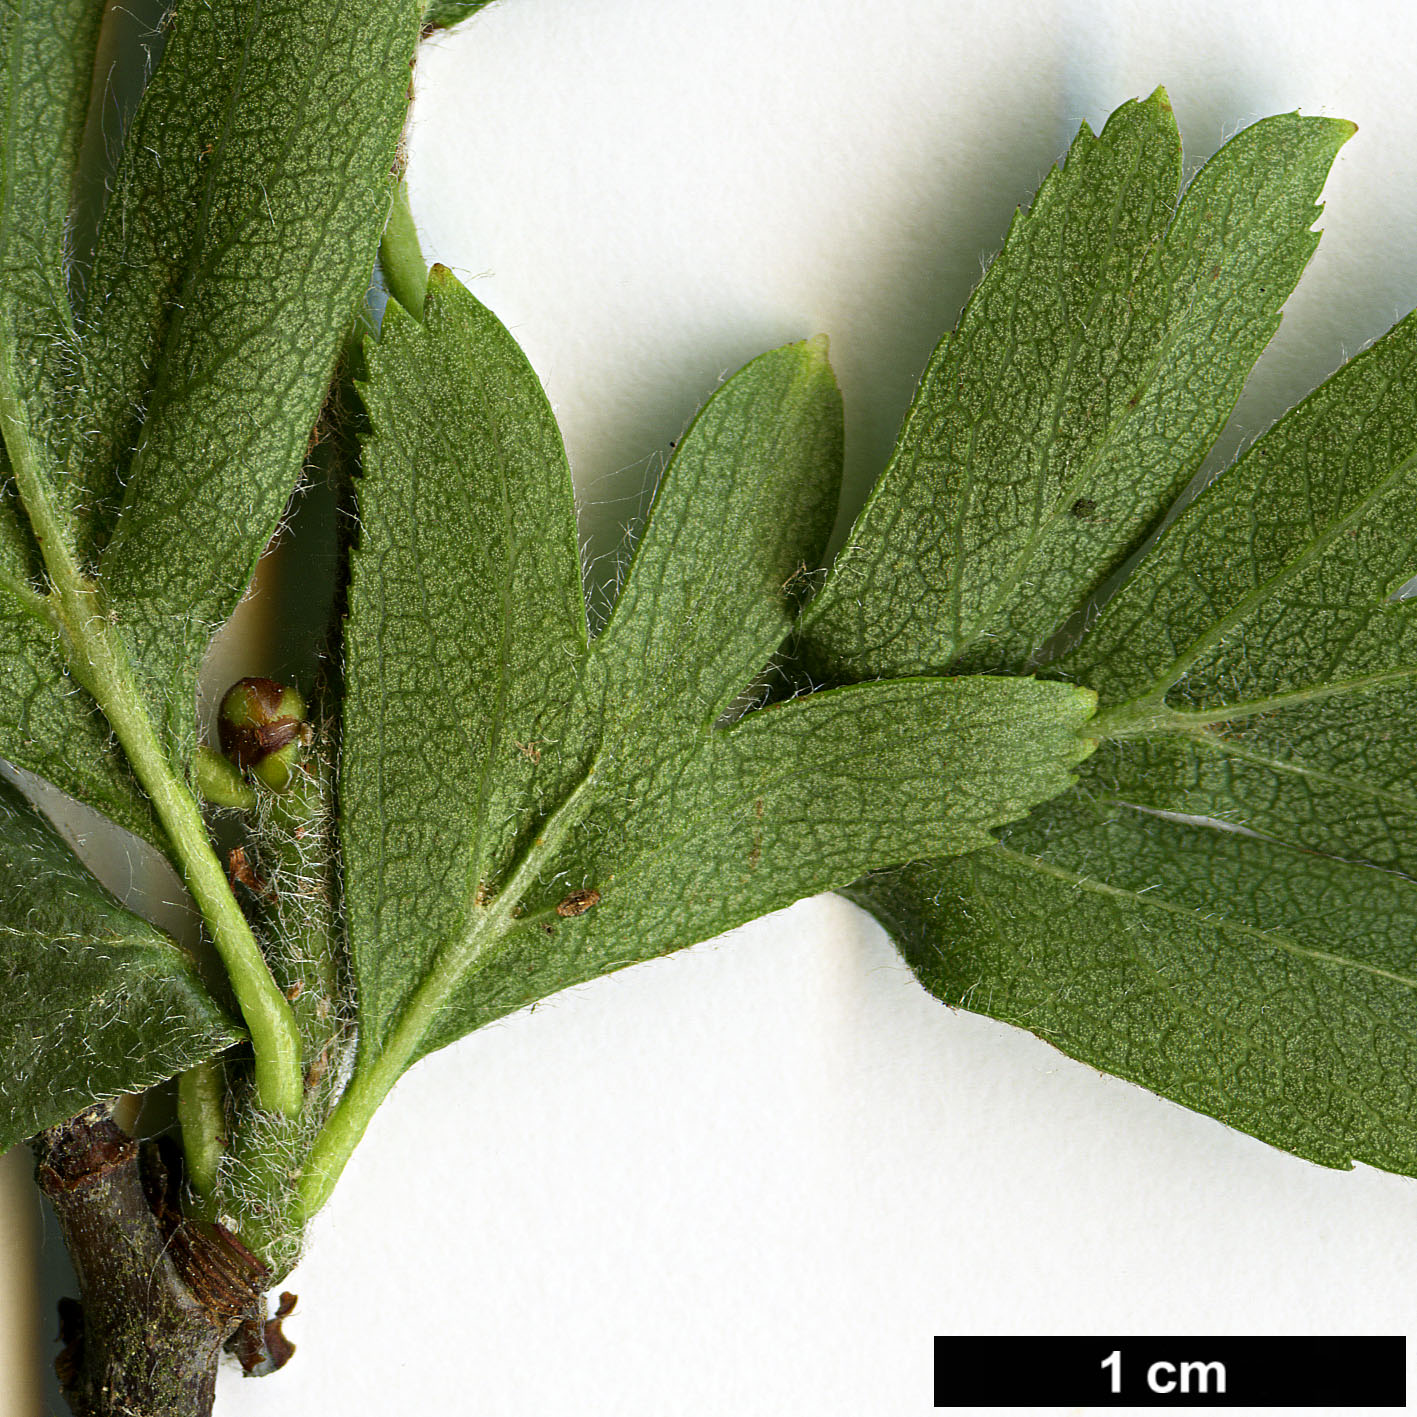 High resolution image: Family: Rosaceae - Genus: Crataegus - Taxon: orientalis